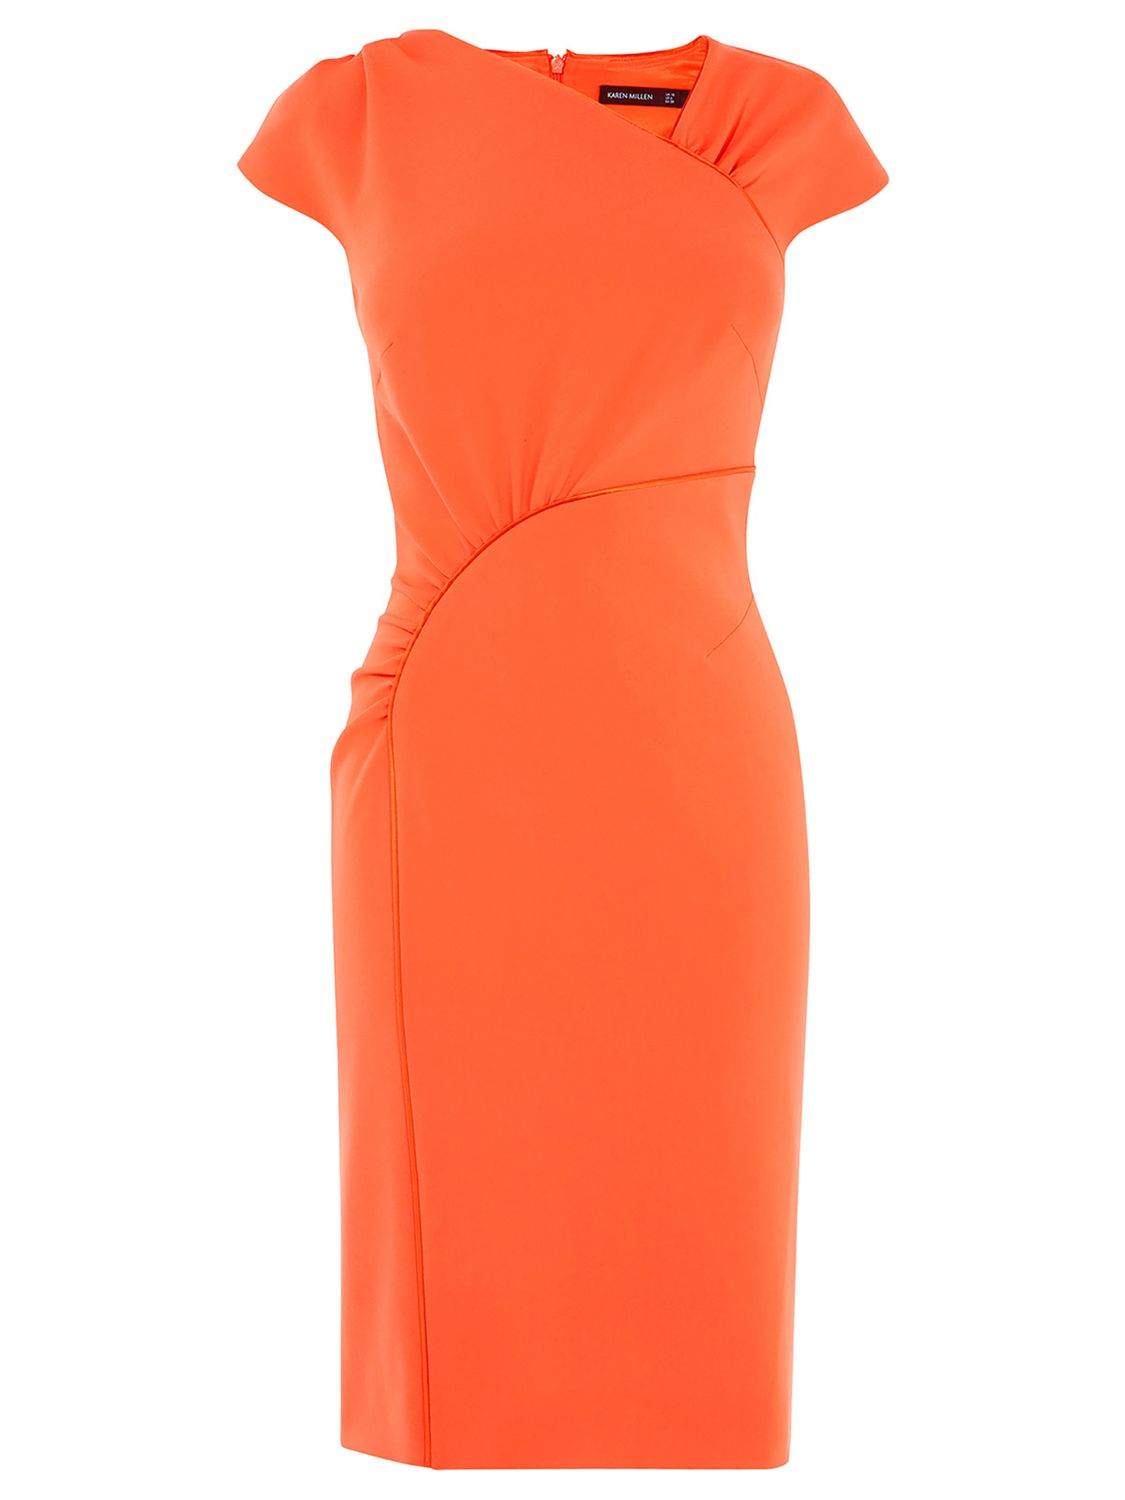 Karen Millen Gathered Dress, Orange at John Lewis & Partners